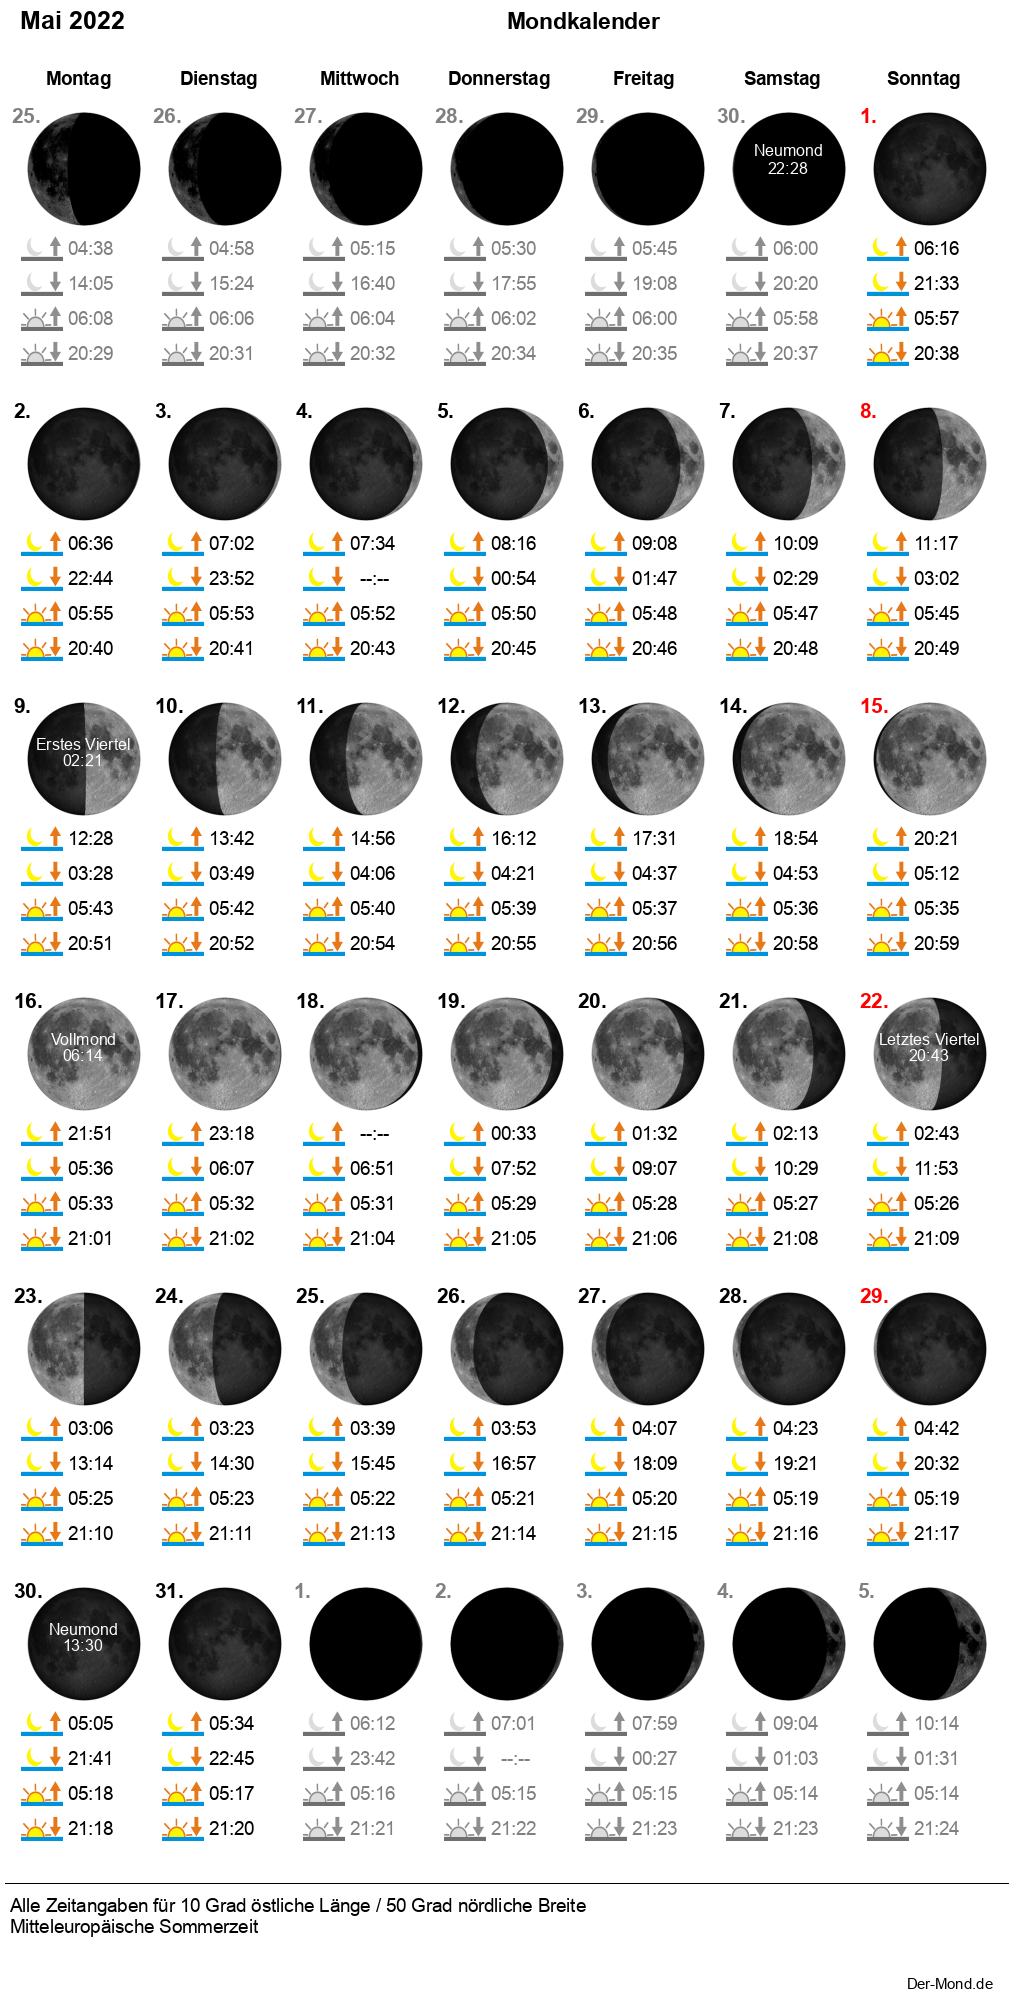 Der Mondkalender mit allen Mondphasen im Monatsverlauf